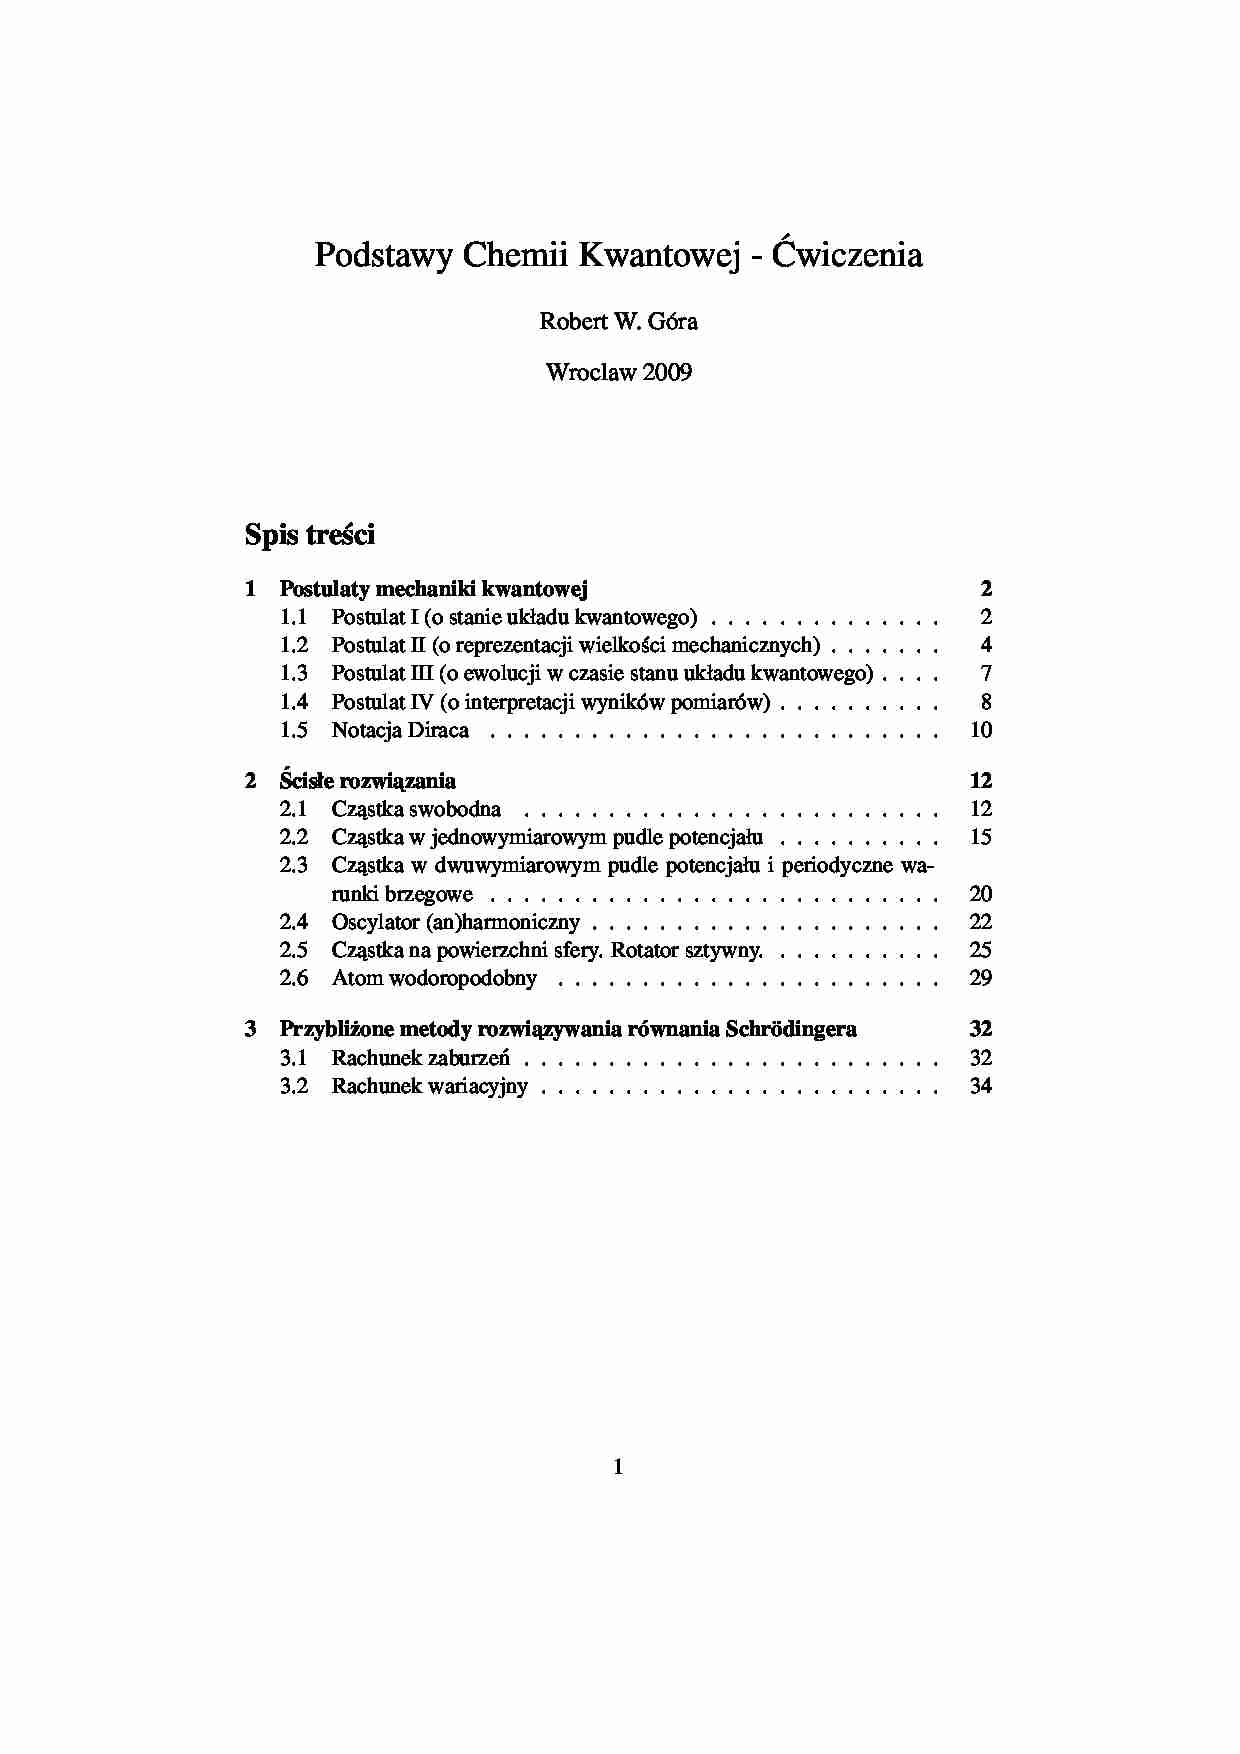 chemia kwantowa - notatki - całość - 2009 - strona 1